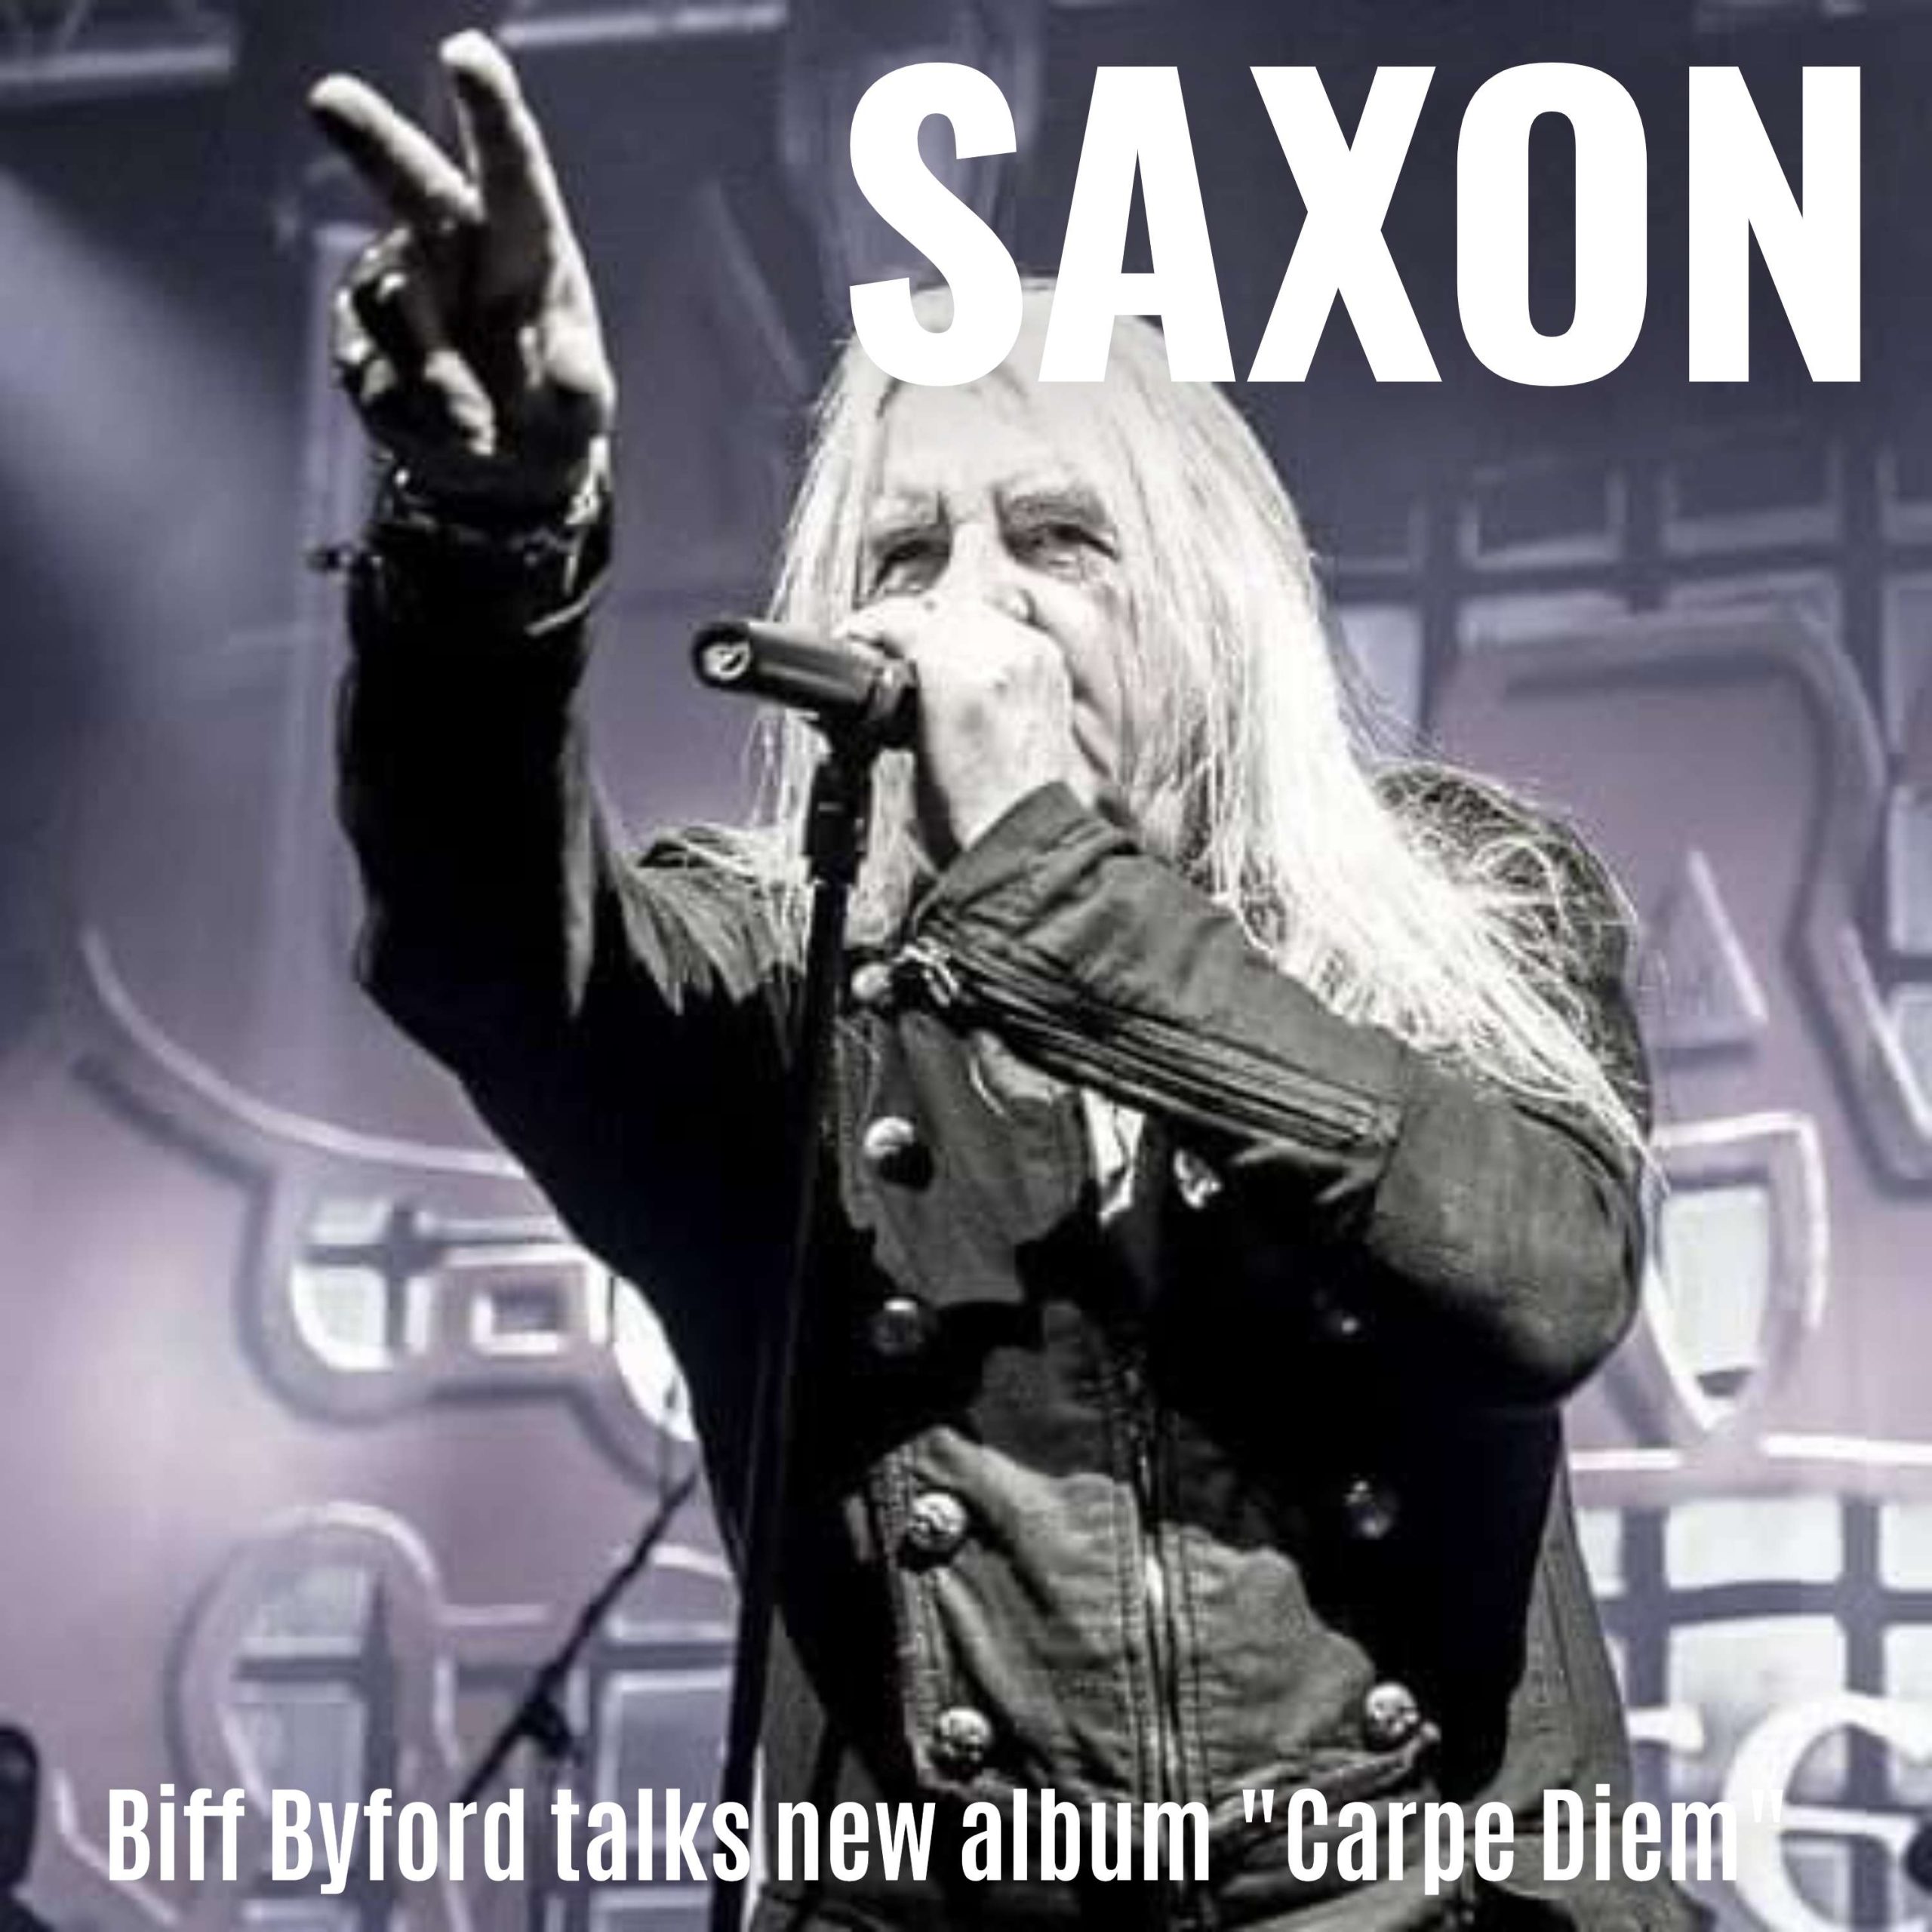 Saxon's Biff Byford